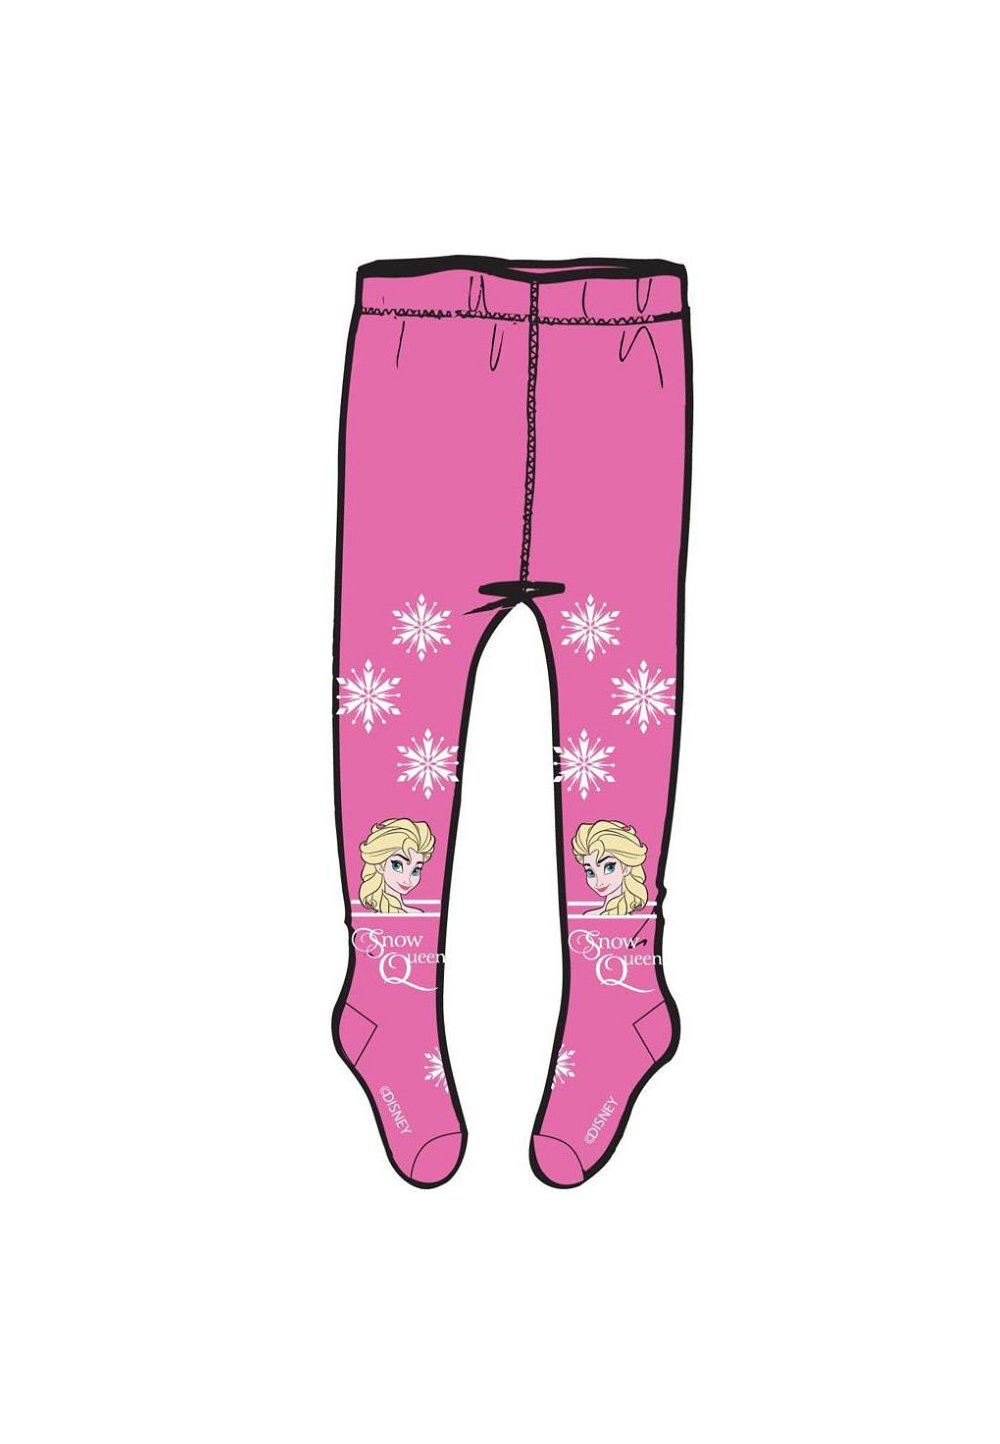 Ciorapi cu chilot, roz, Snow Queen imagine